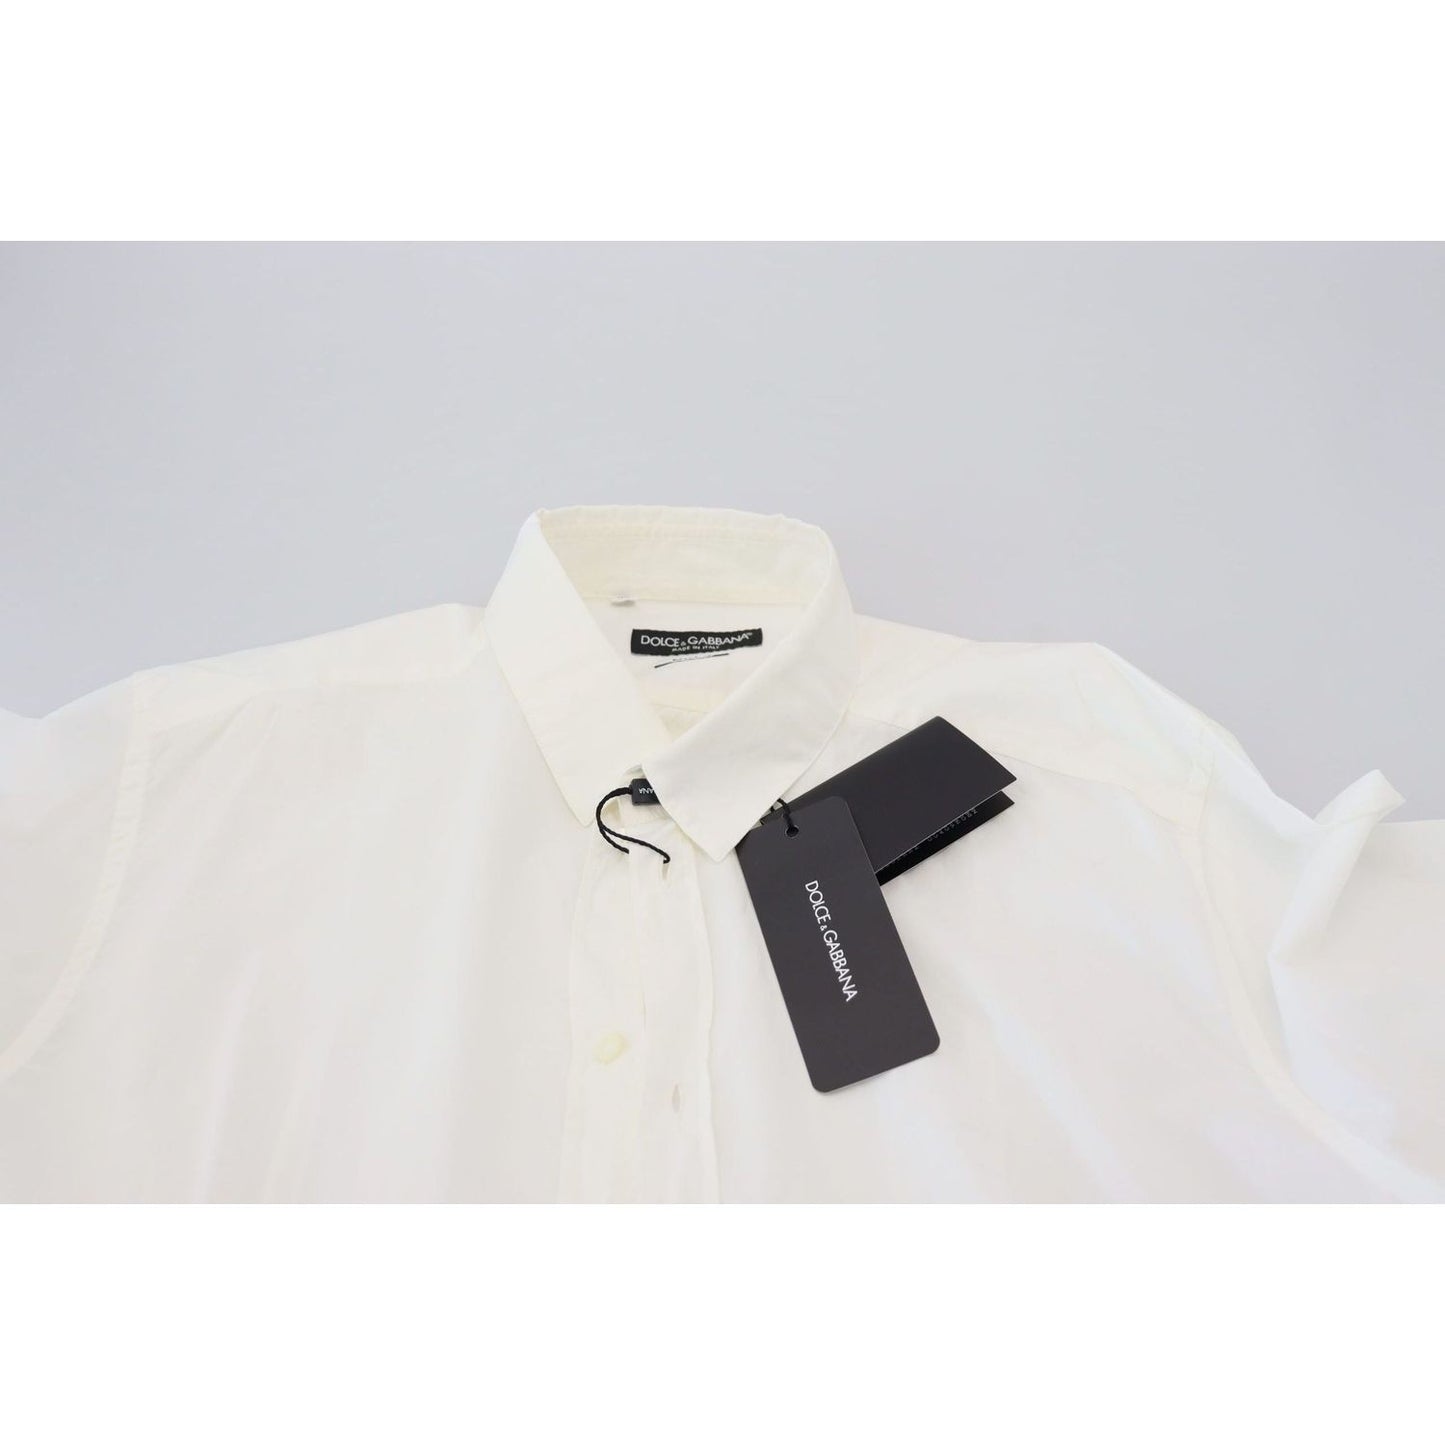 Dolce & Gabbana Elegant Slim Fit Dress Shirt white-cotton-slim-fit-dress-shirt IMG_8073-scaled-fbf1d9cc-6cd.jpg